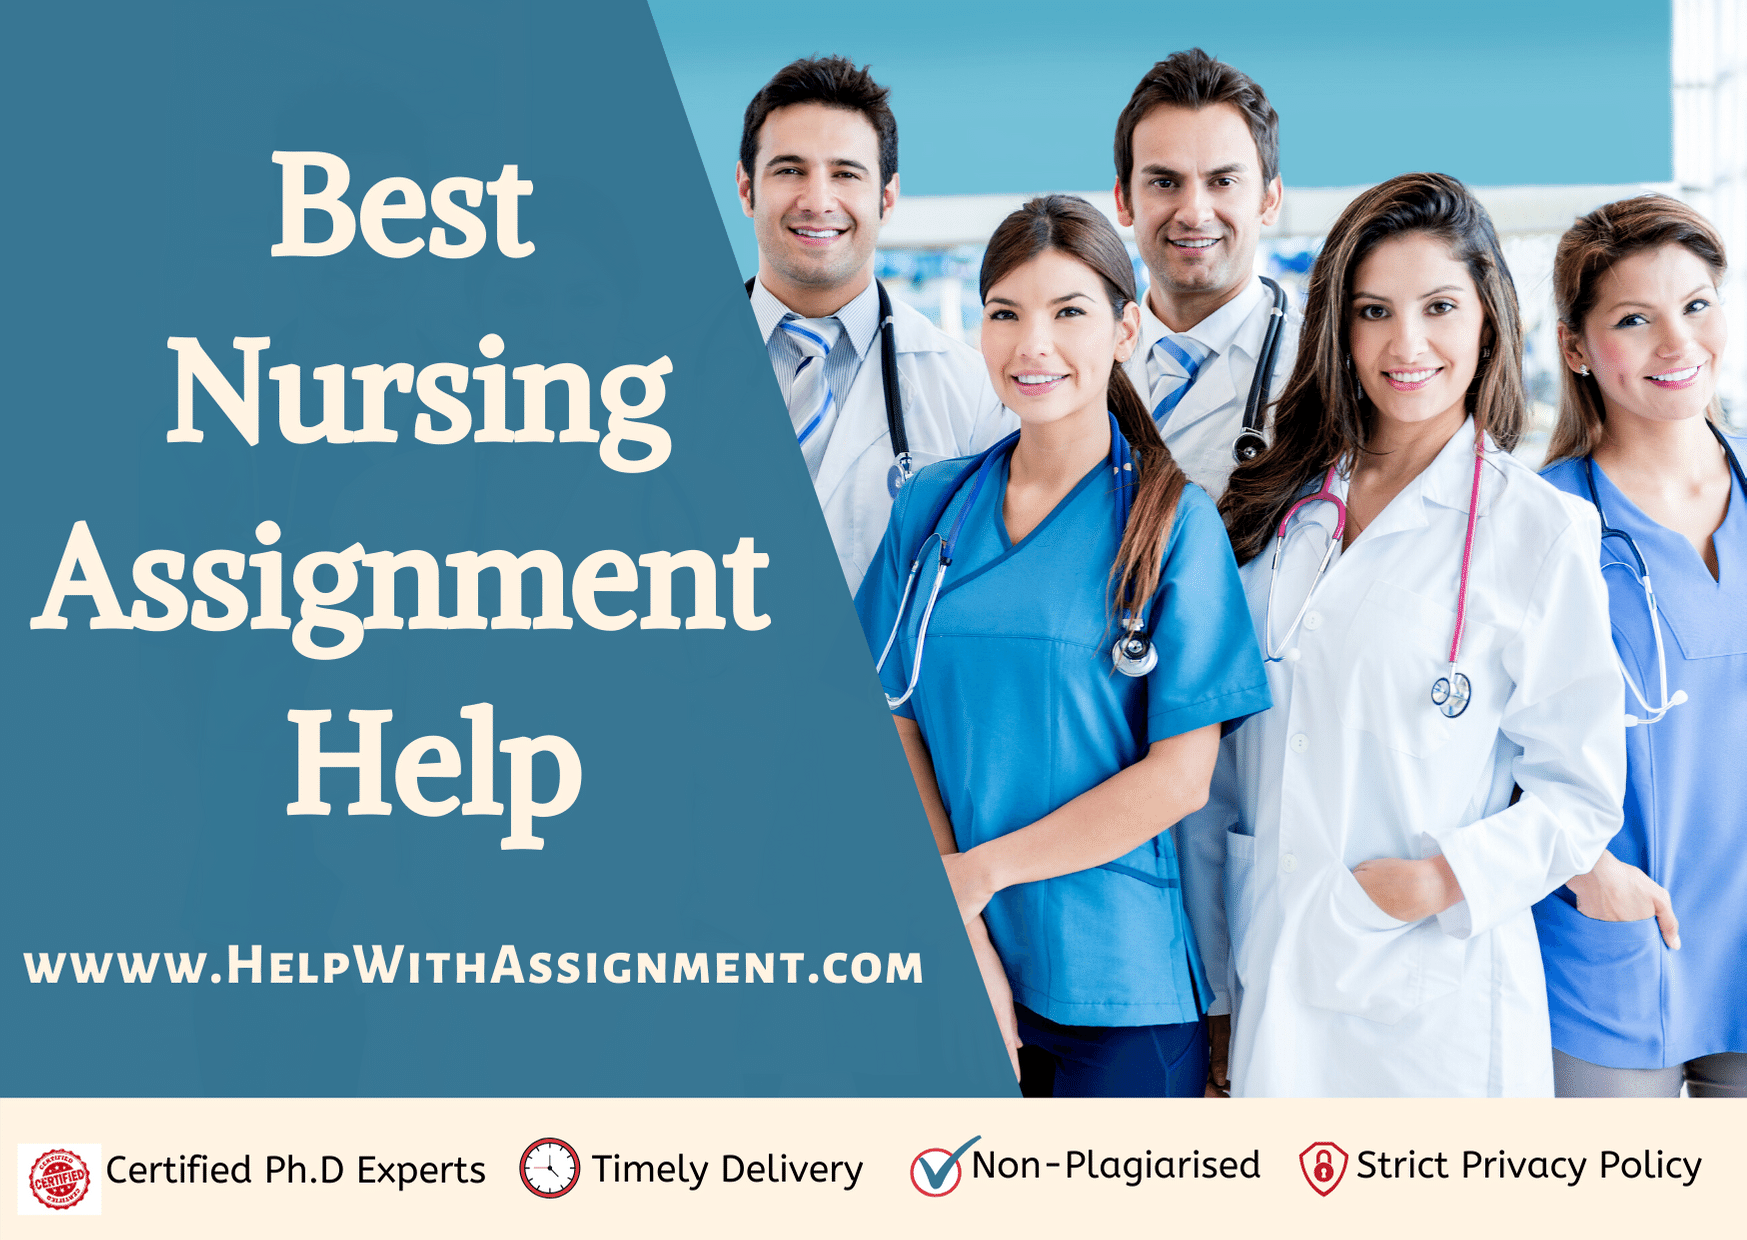 Nursing Assignment Help for Students  Nurse specialties, Medical jobs,  Nursing school motivation